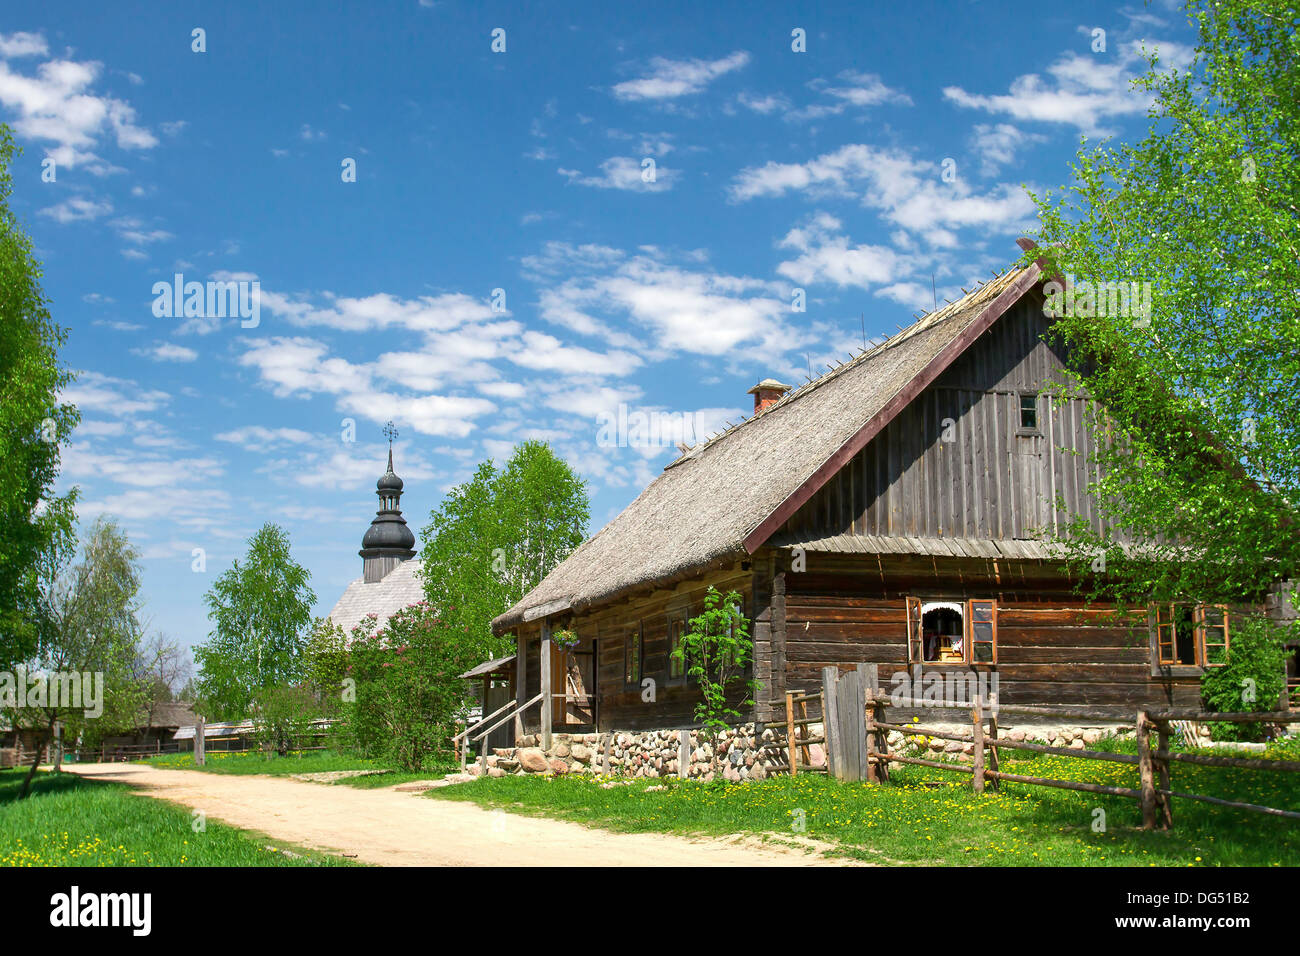 Le Bélarus village du 18ème siècle dans l'architecture populaire en bois et musée de la vie Strochicy. Banque D'Images